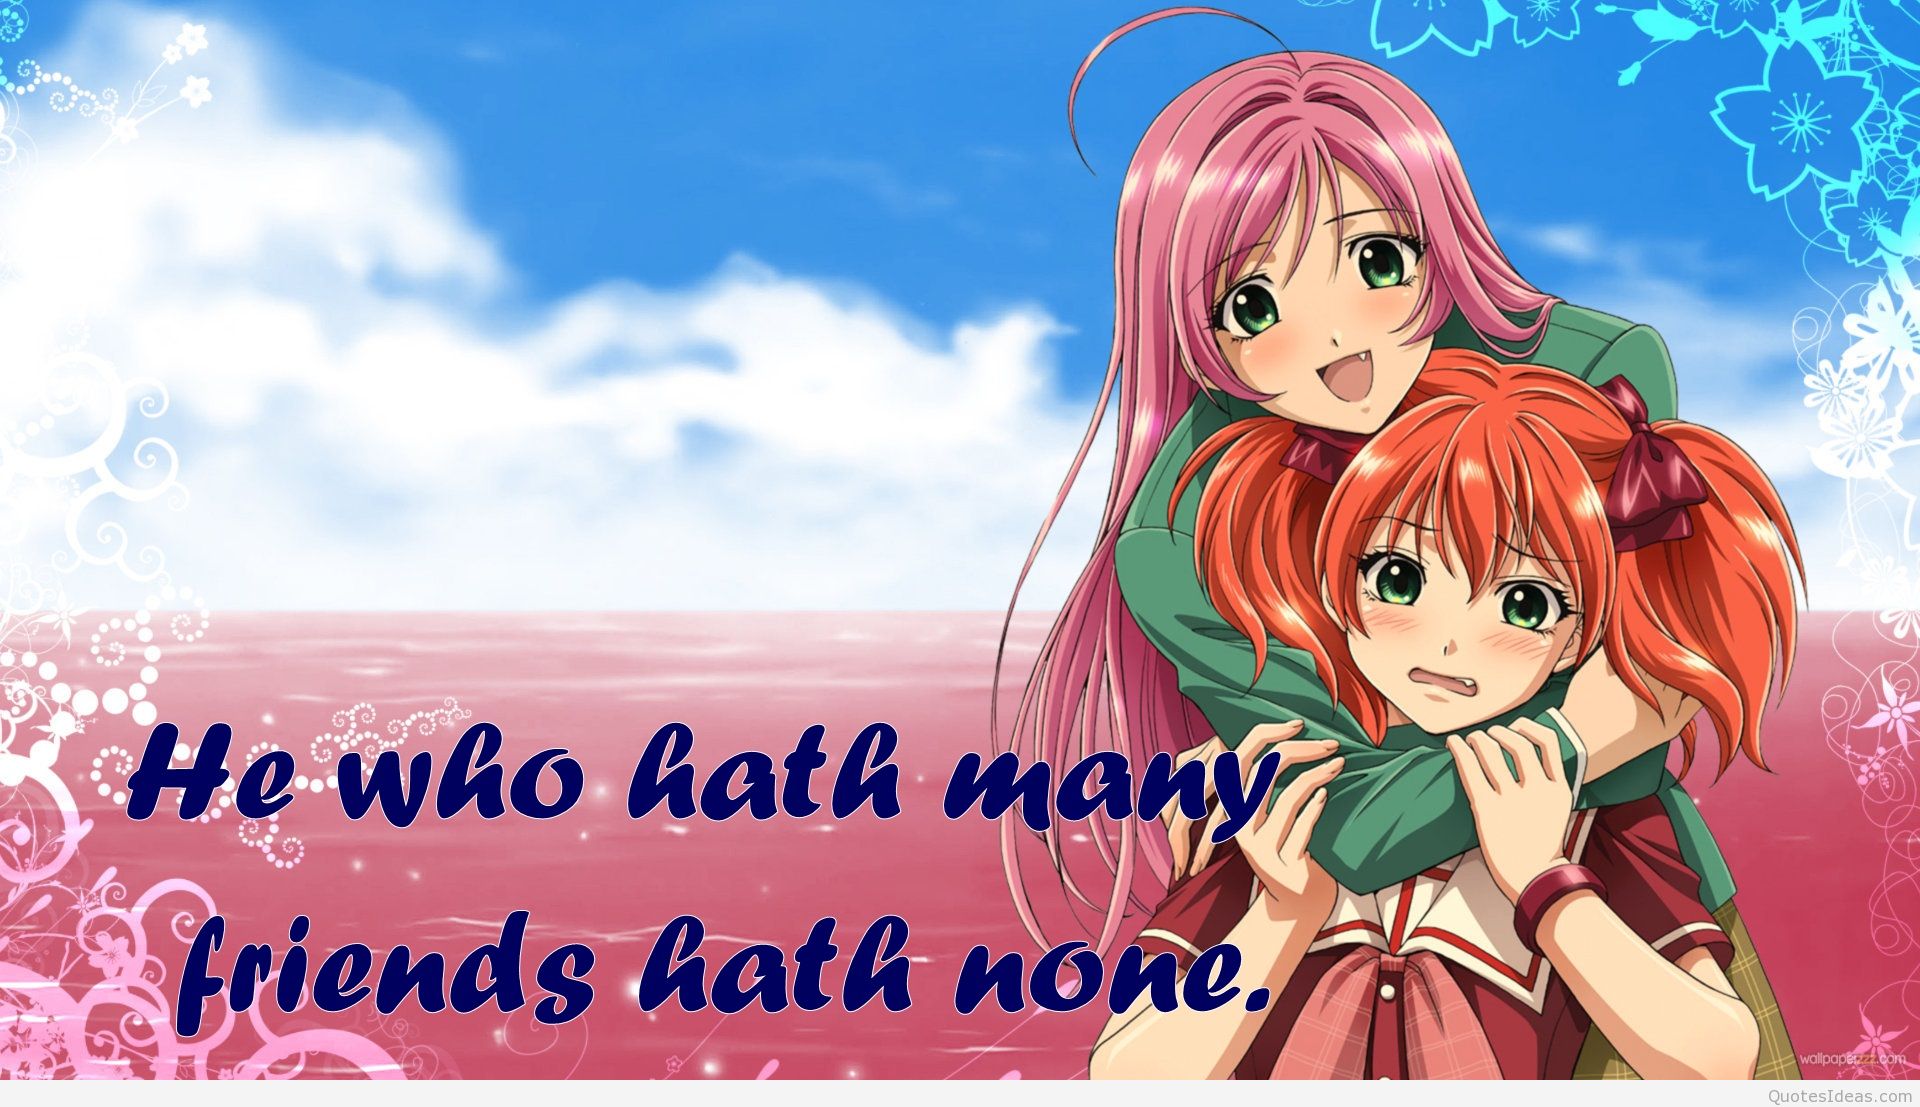 Anime Friendship Quotes. QuotesGram